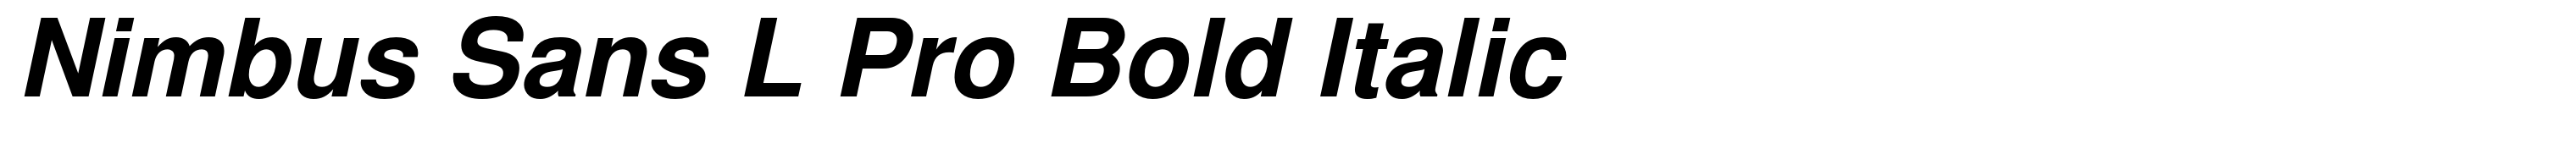 Nimbus Sans L Pro Bold Italic